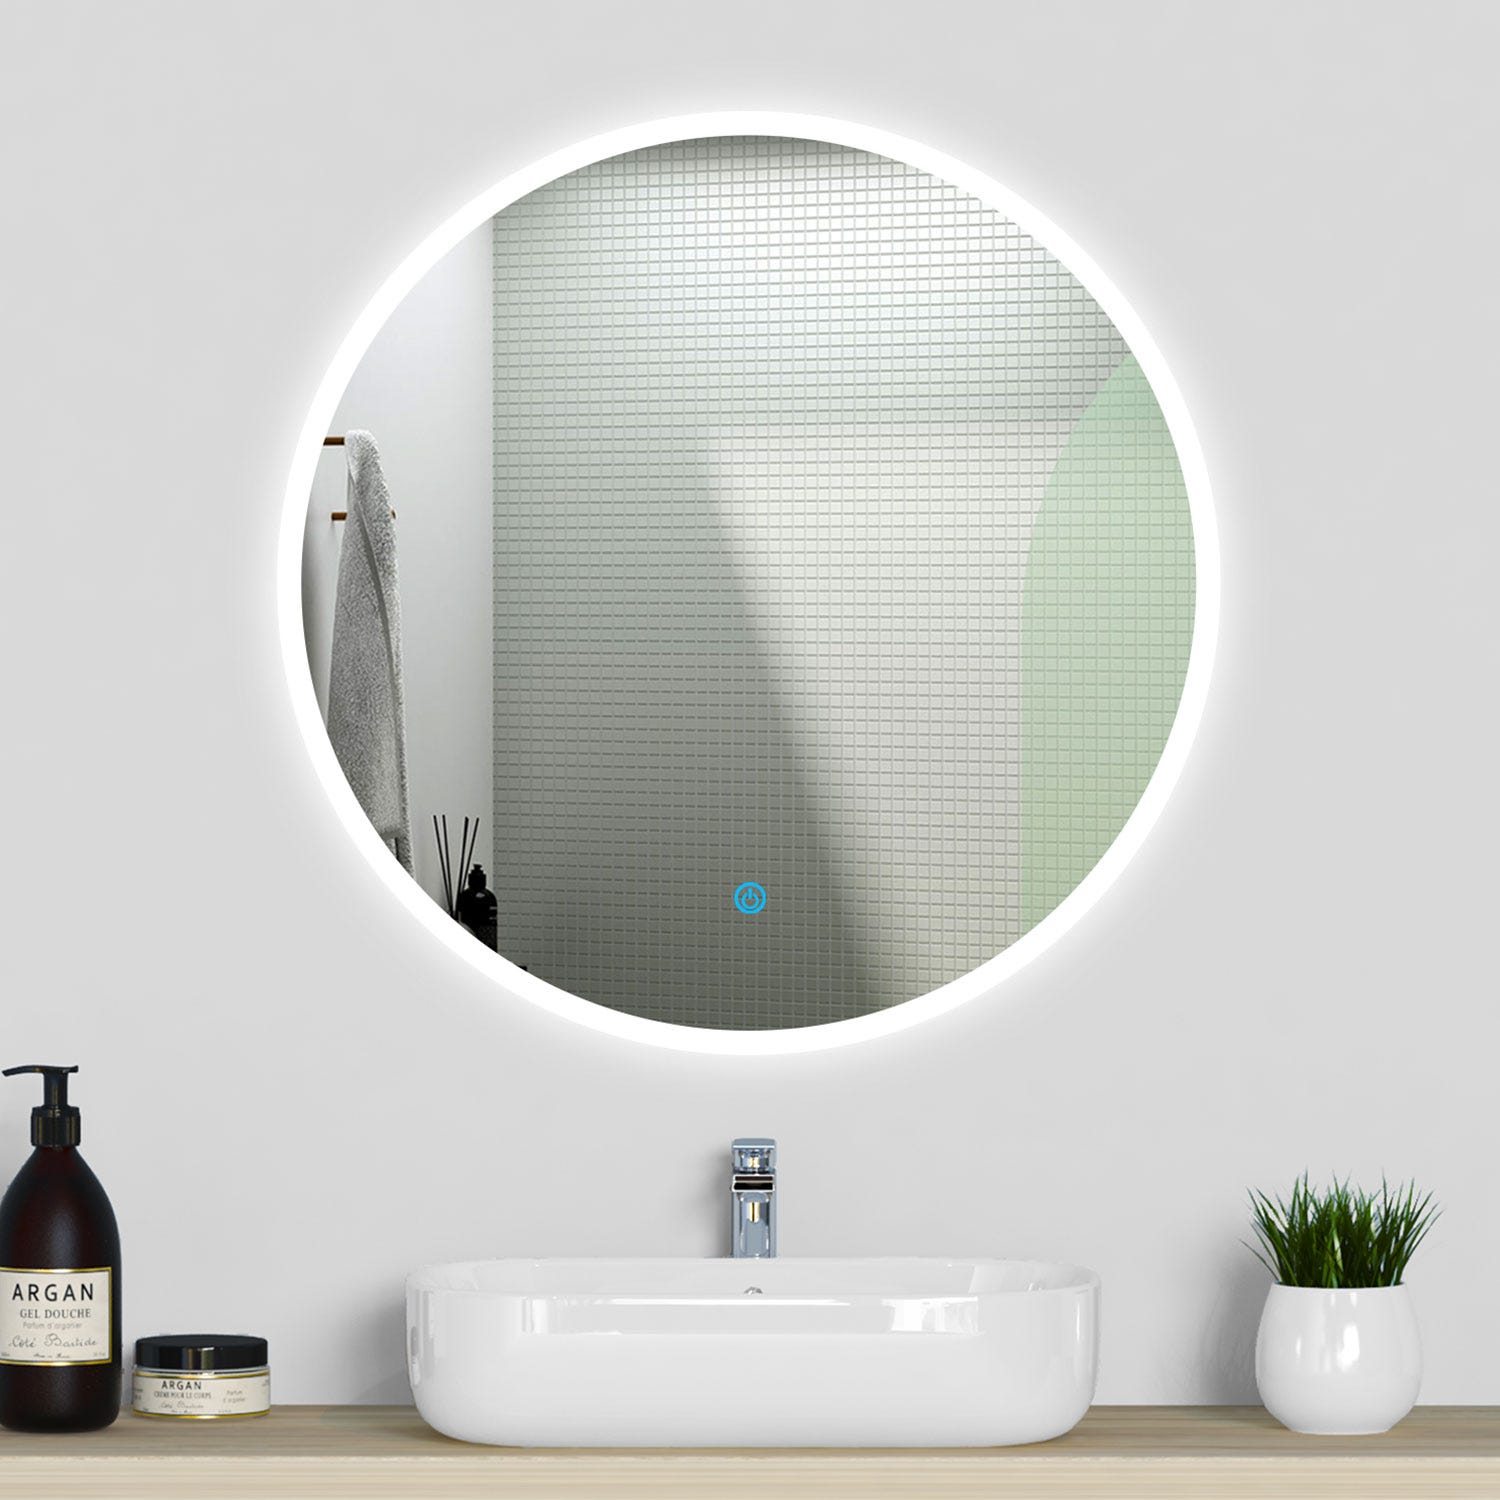 Espejo baño Redondo 80cm con luz led y sistema extensible